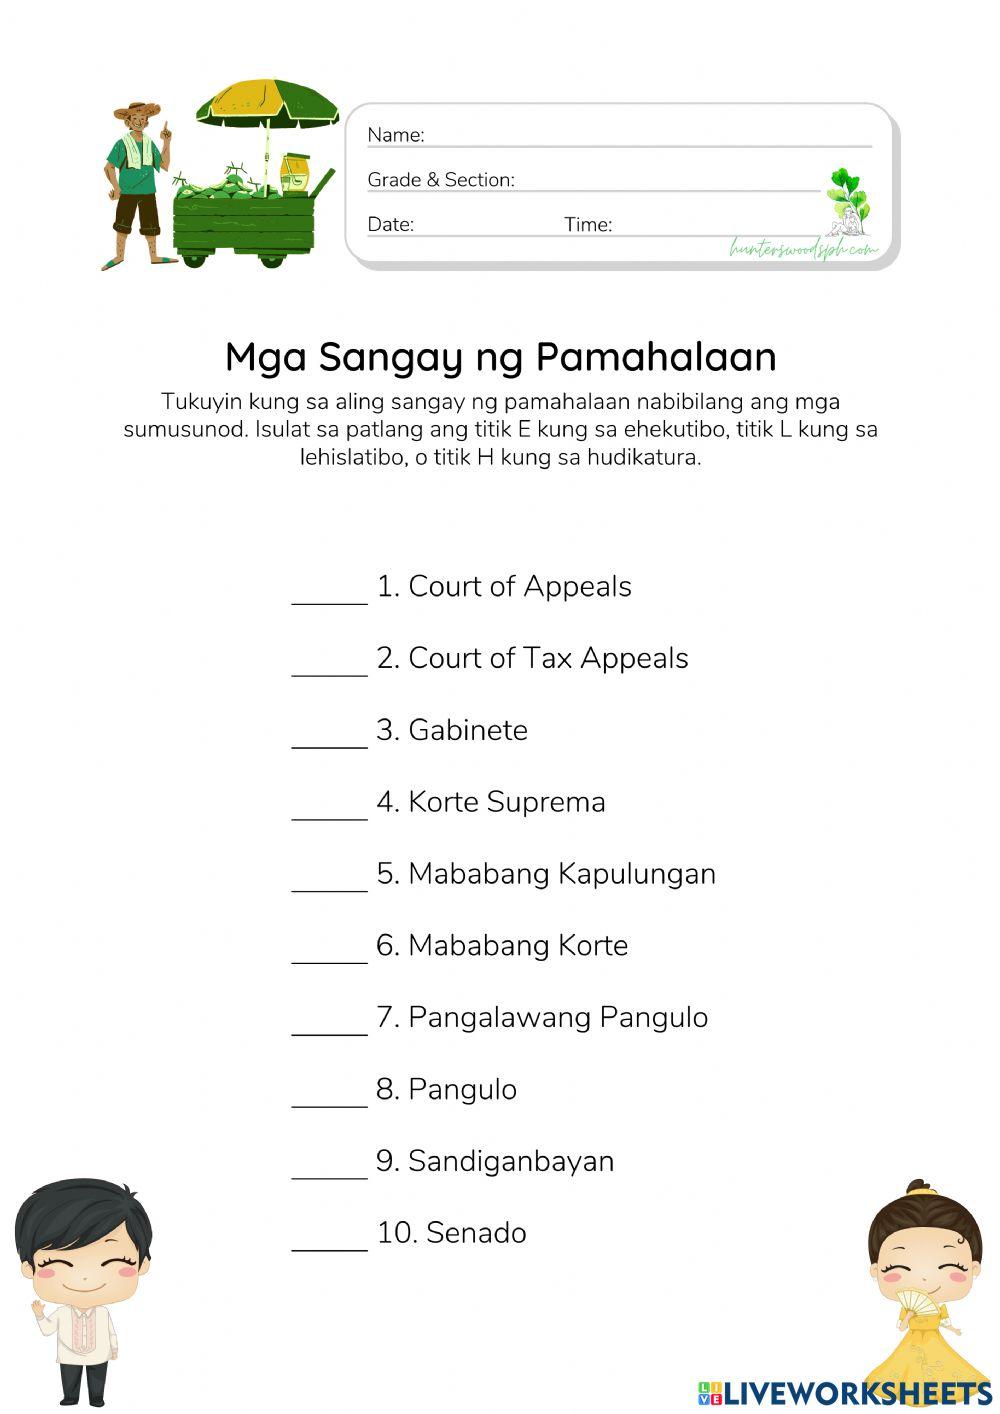 Mga Sangay ng Pamahalaan ng Pilipinas - HunterWoodsPH.com Worksheet